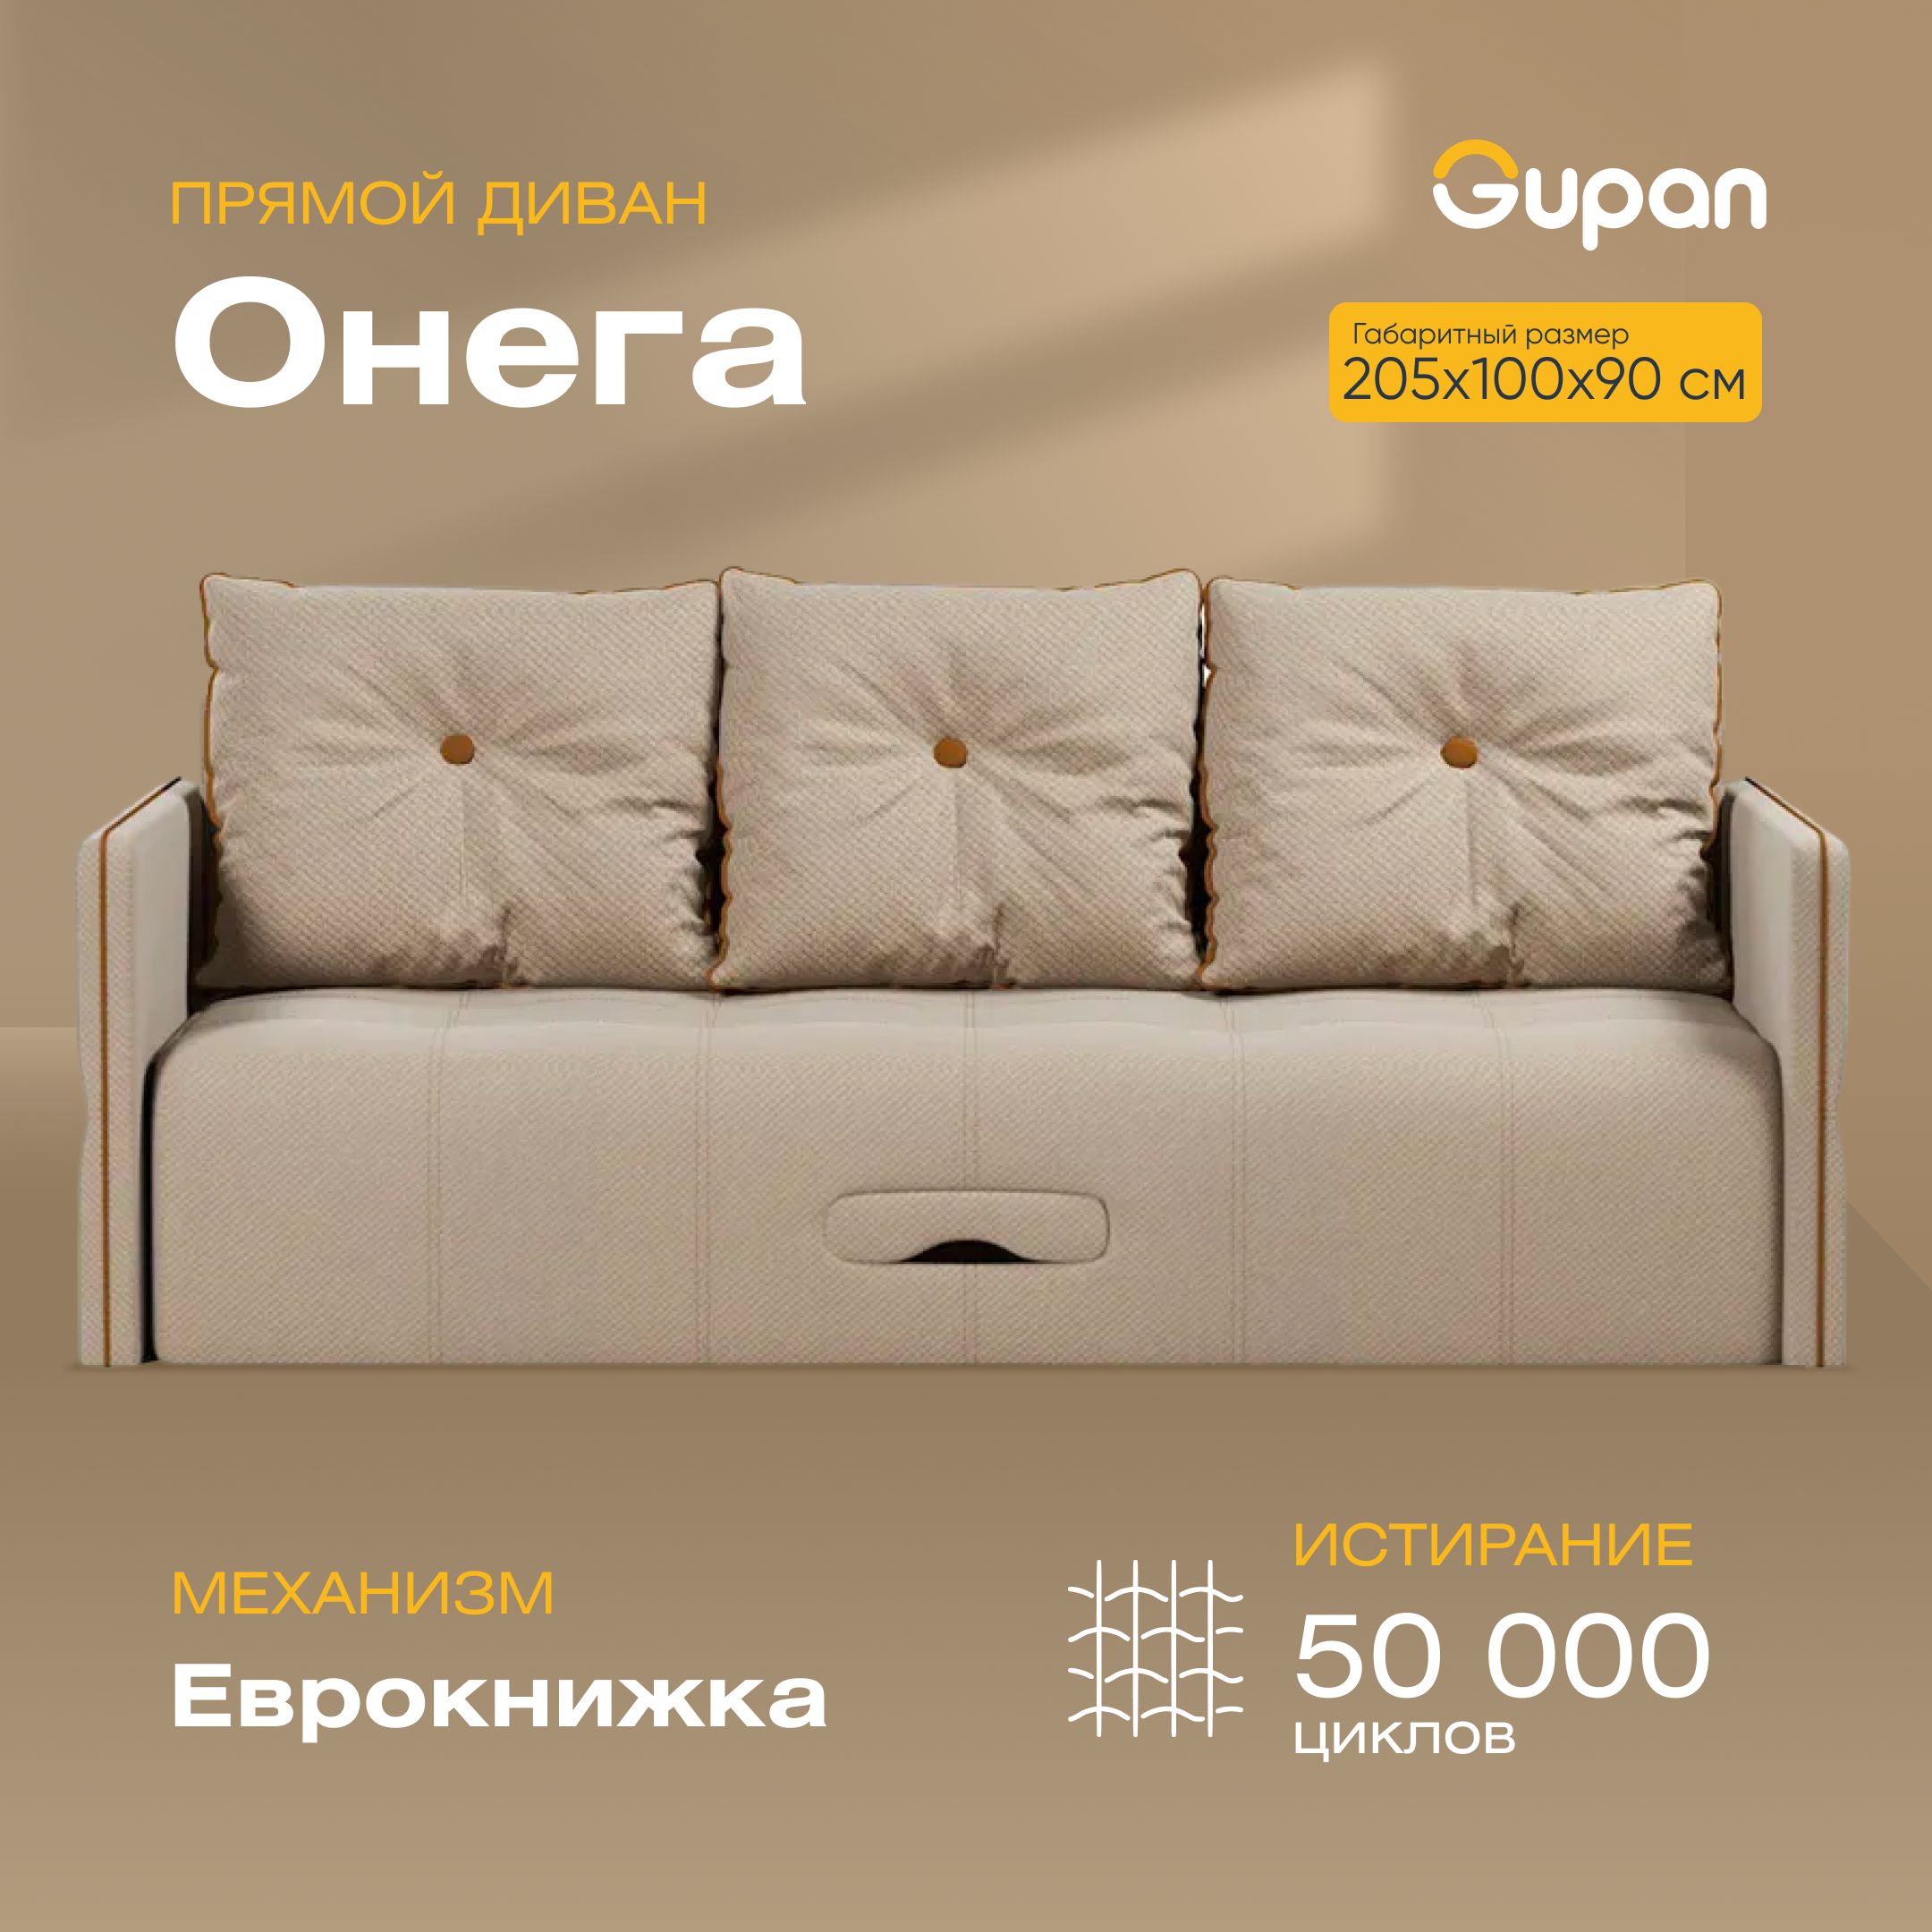 Прямой диван Онега, механизм Еврокнижка, 205х100х90 см - купить по низкойцене в интернет-магазине OZON (1014630608)